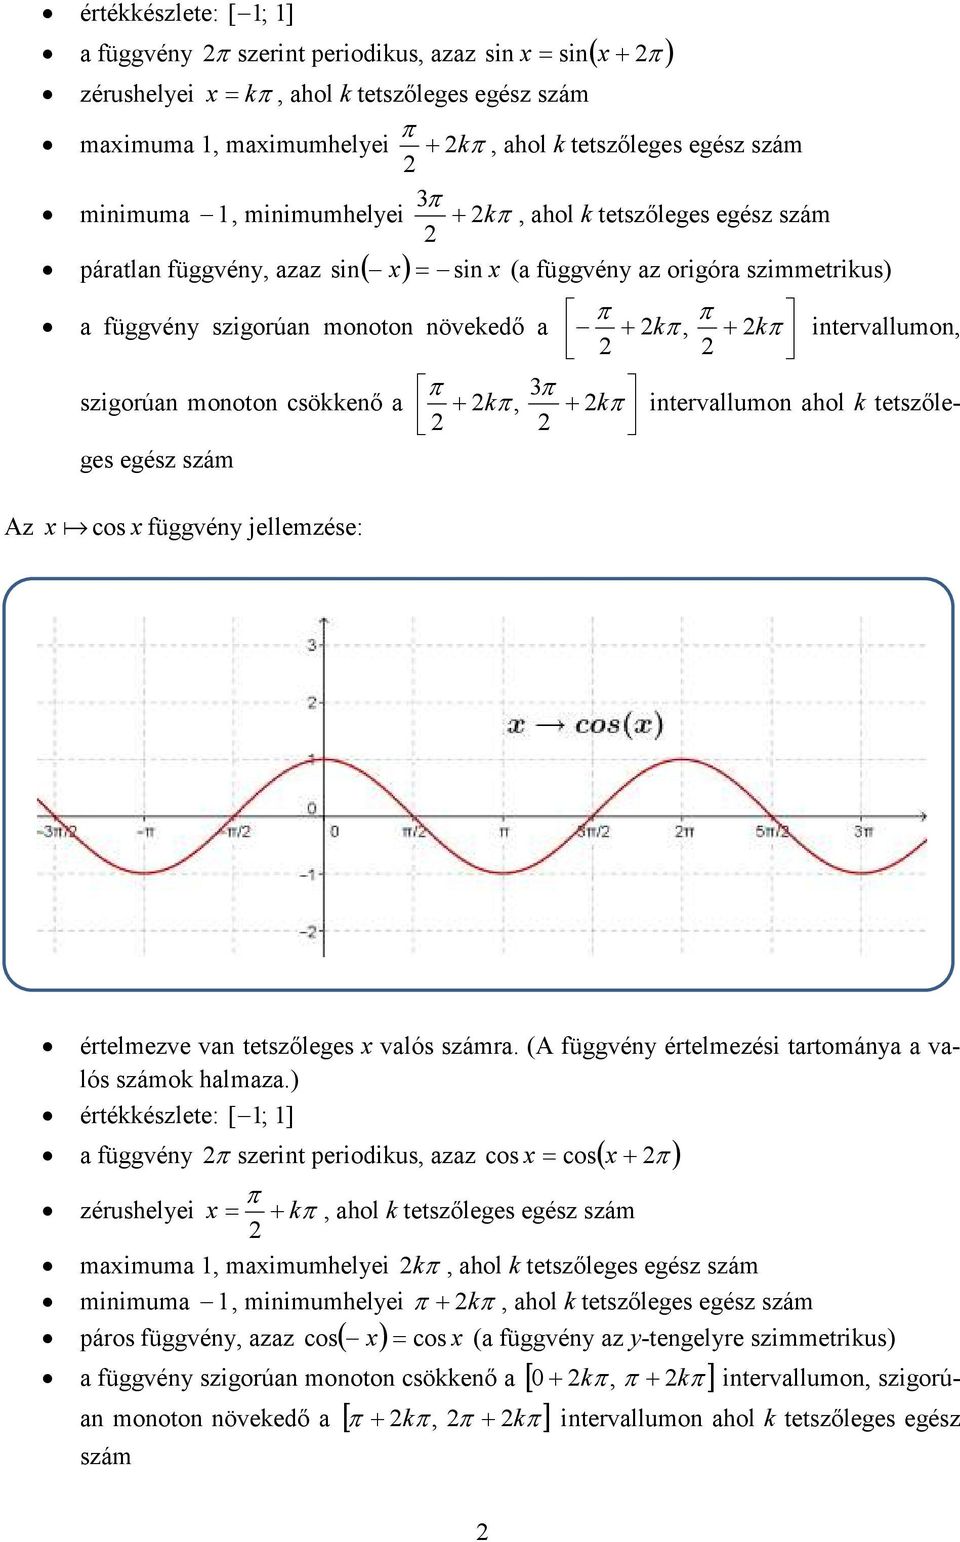 ahol k tetszőle- ges egész szám + k + k intervallumon Az x a cos x függvény jellemzése: értelmezve van tetszőleges x valós számra (A függvény értelmezési tartománya a valós számok halmaza)